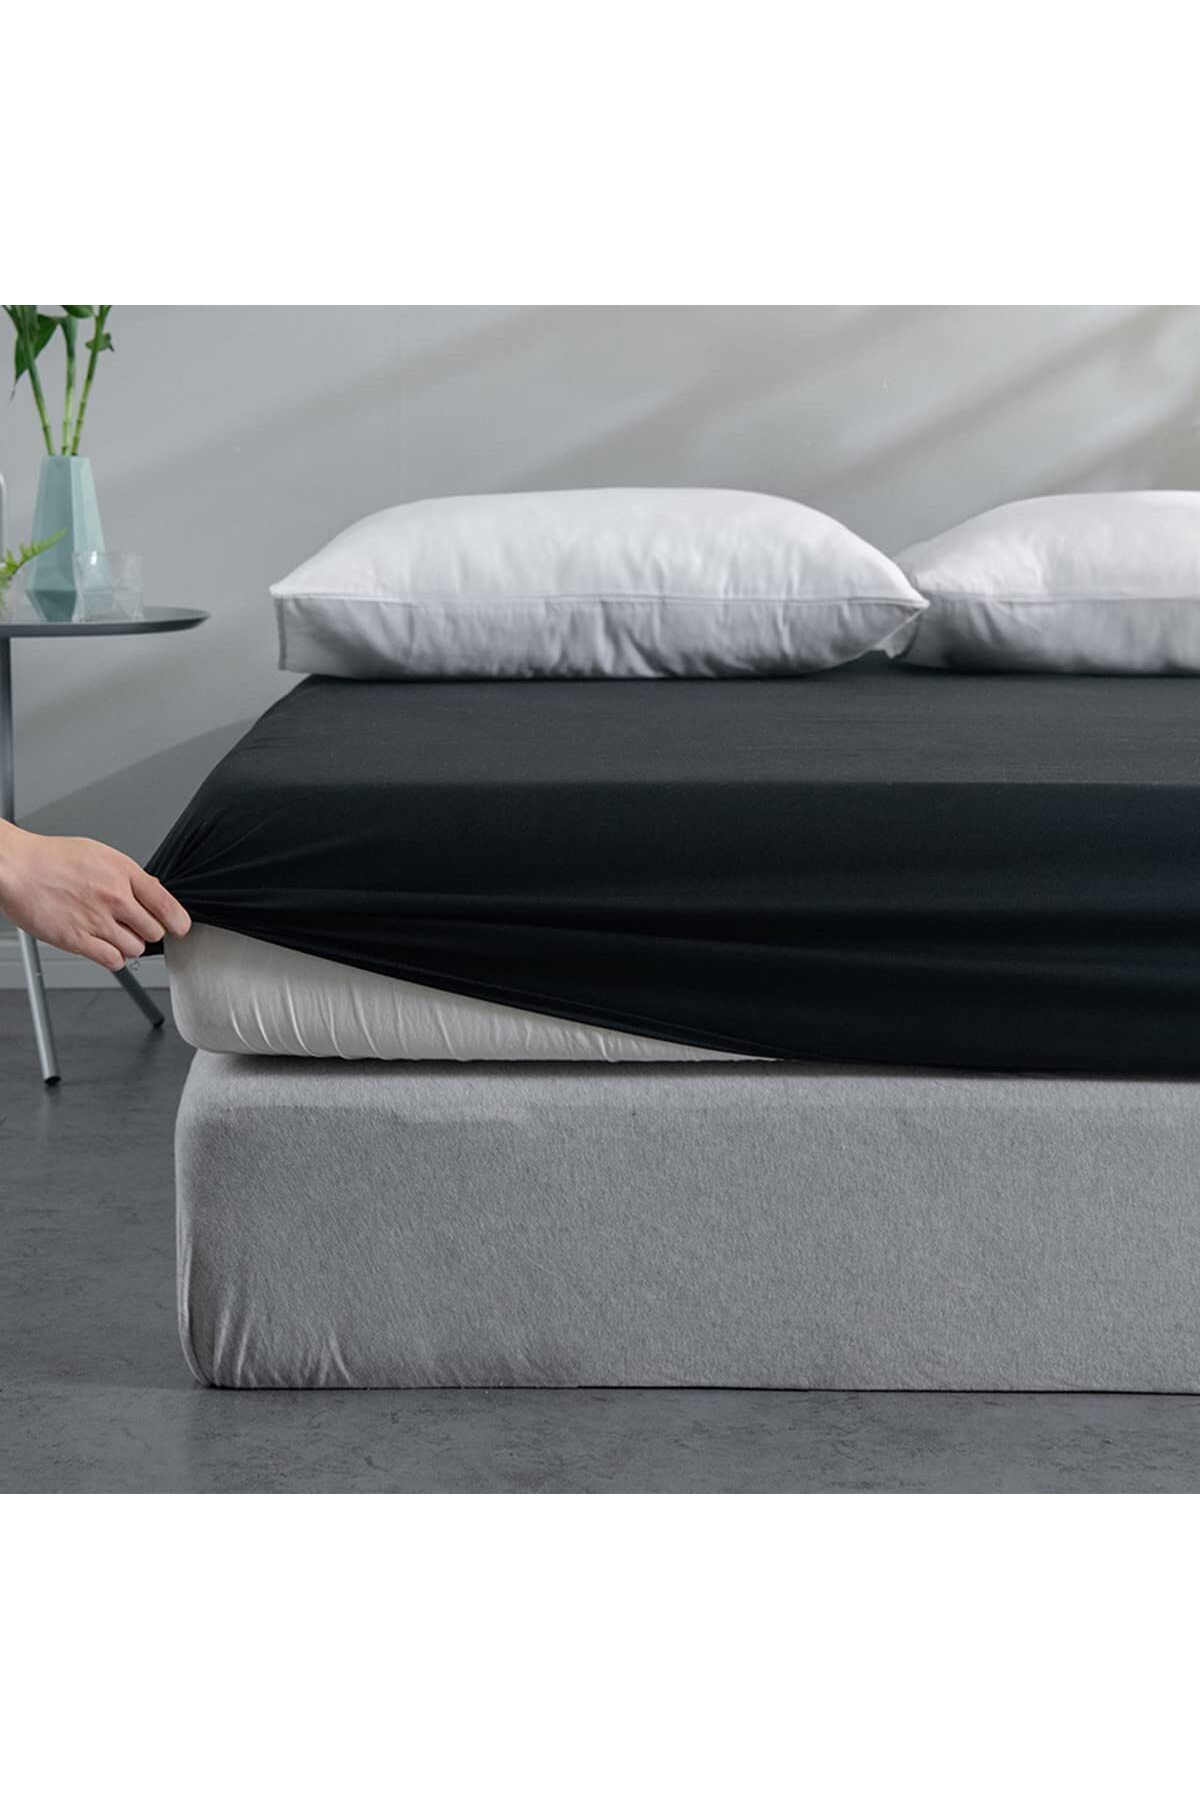 İzgi Concept Ranforce Çift Kişilik Lastikli Çarşaf Seti + 2 Adet Kapaklı Yastık Kılıfı 160x200 Yüksek Kalite